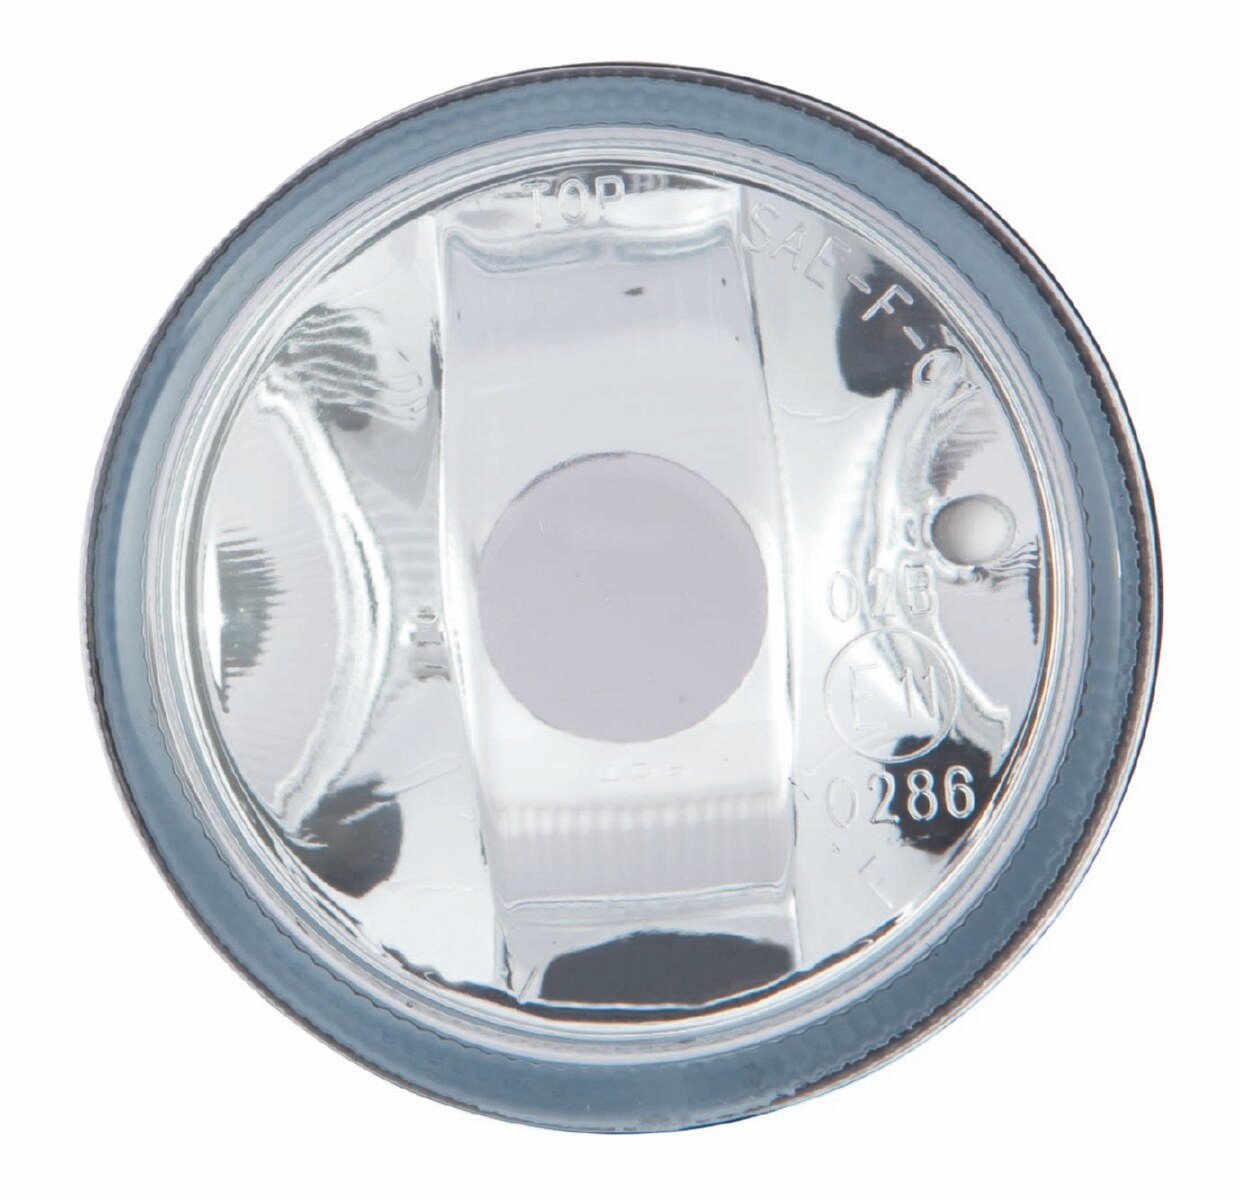 TarosTrade 36-0508-N-72313 Nebelscheinwerfer Für H8 Glühlampe Runder von DoctorAuto